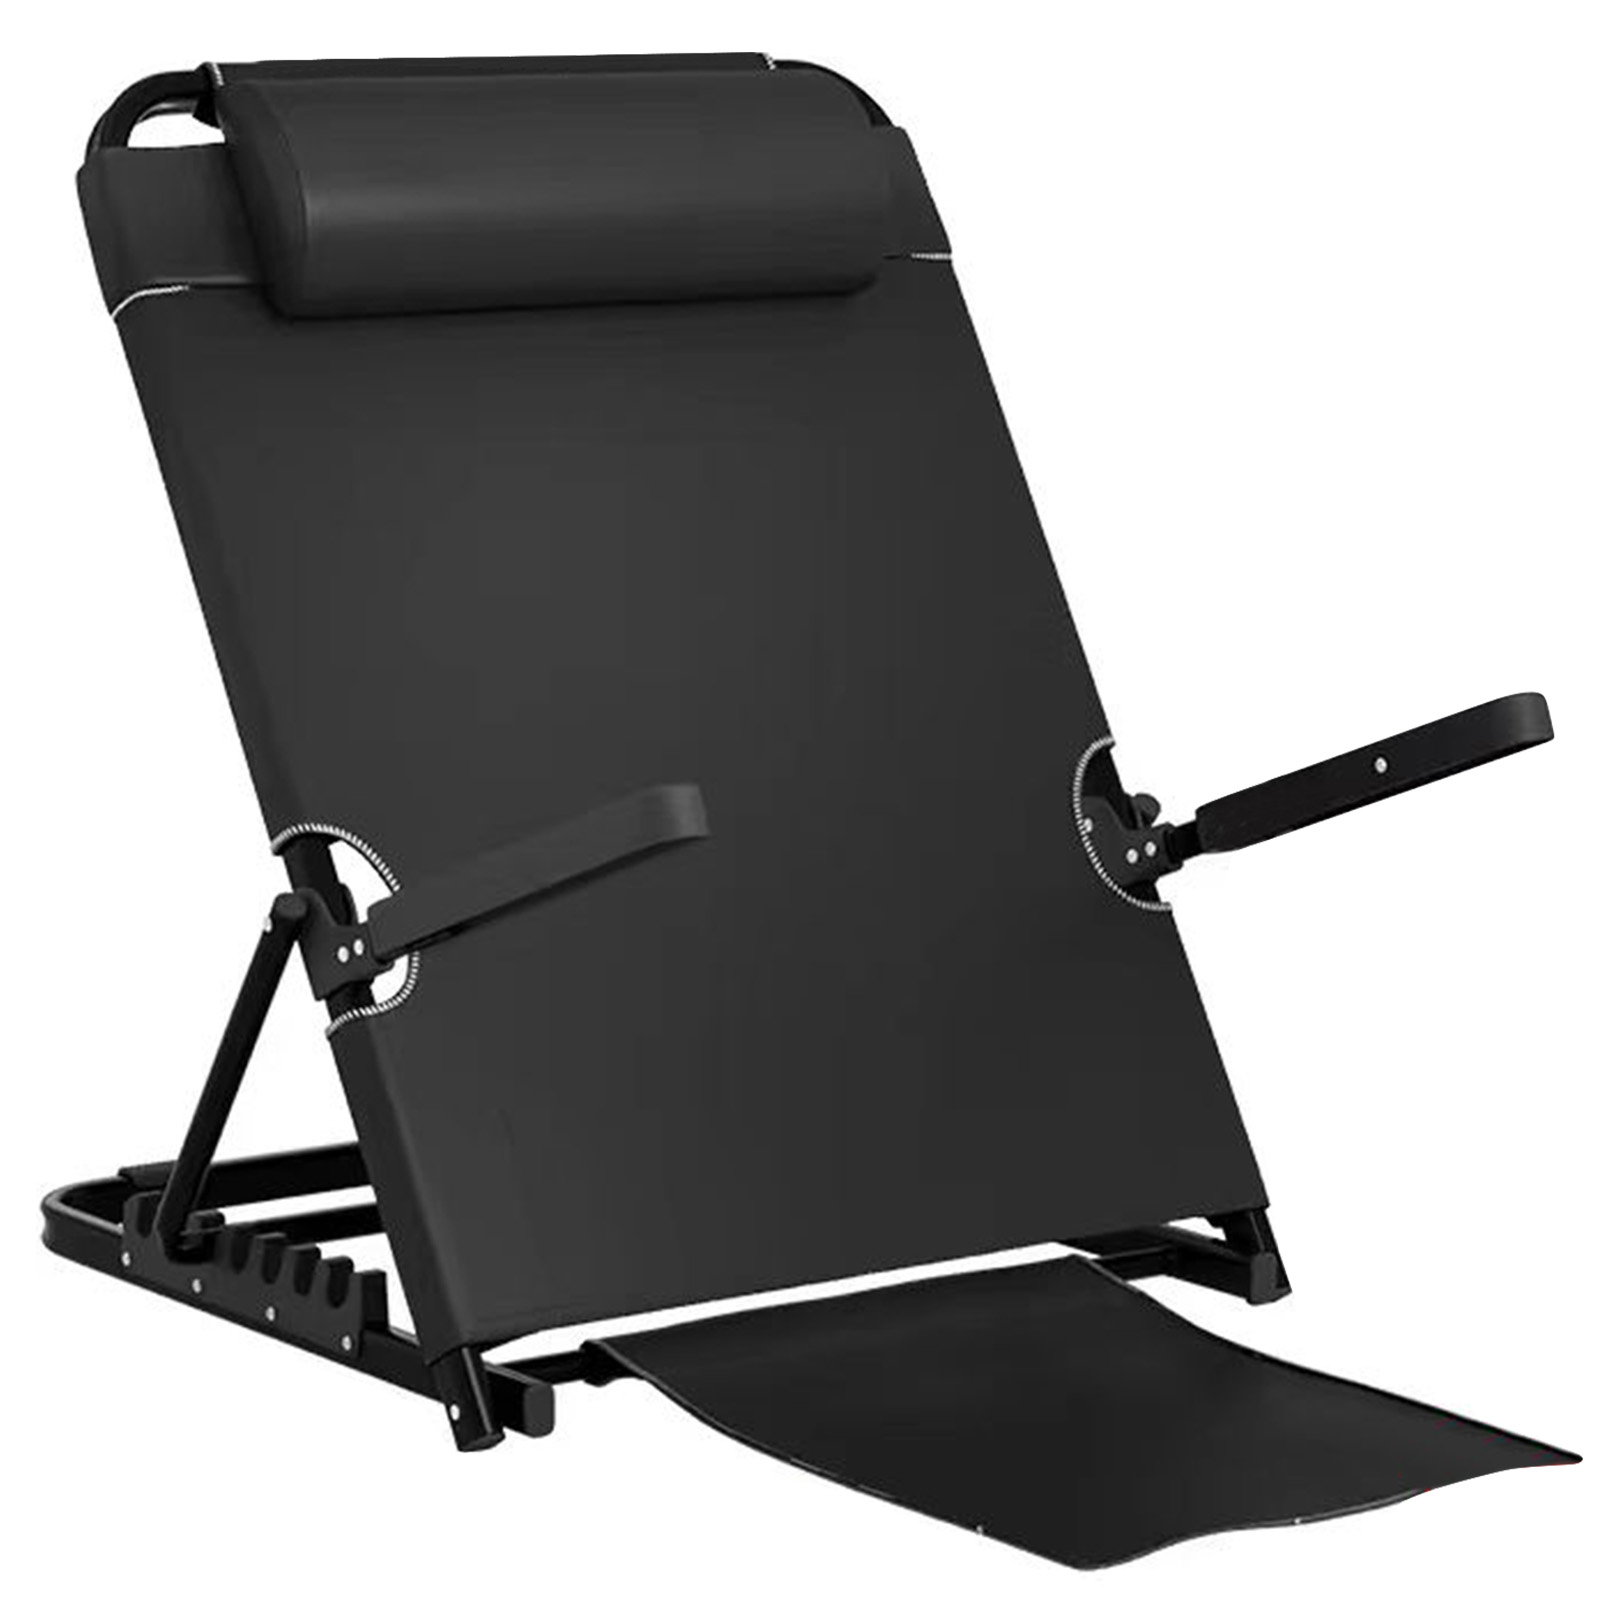 Large black with armrest